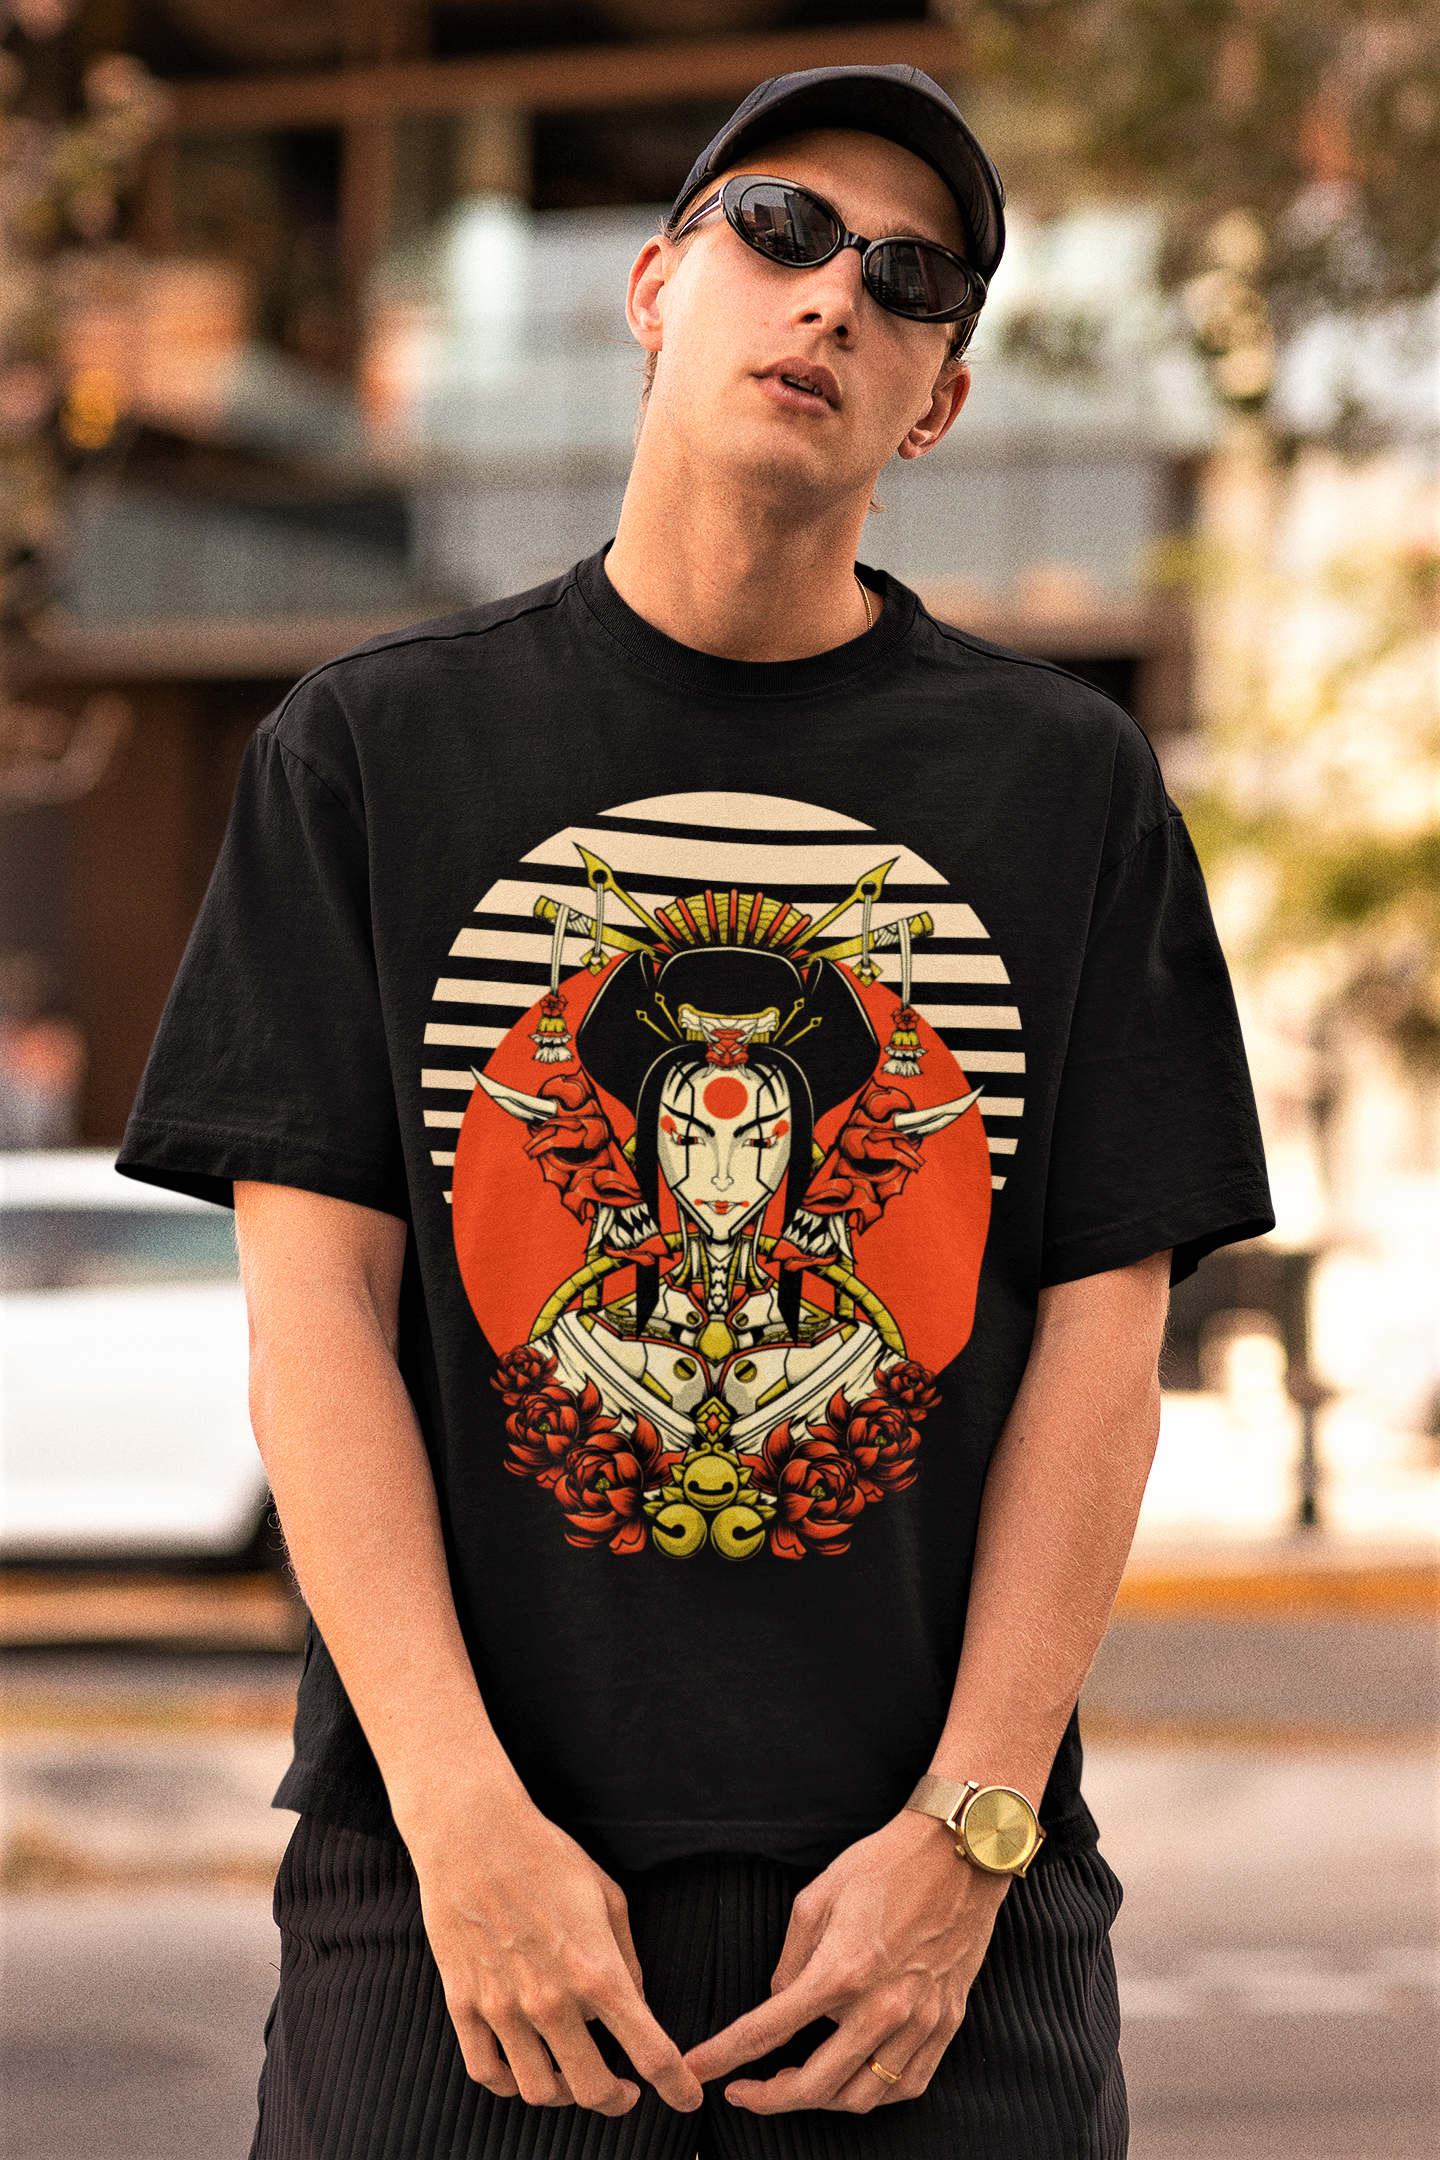 Geisha unisex Over-sized Unisex T-shirt